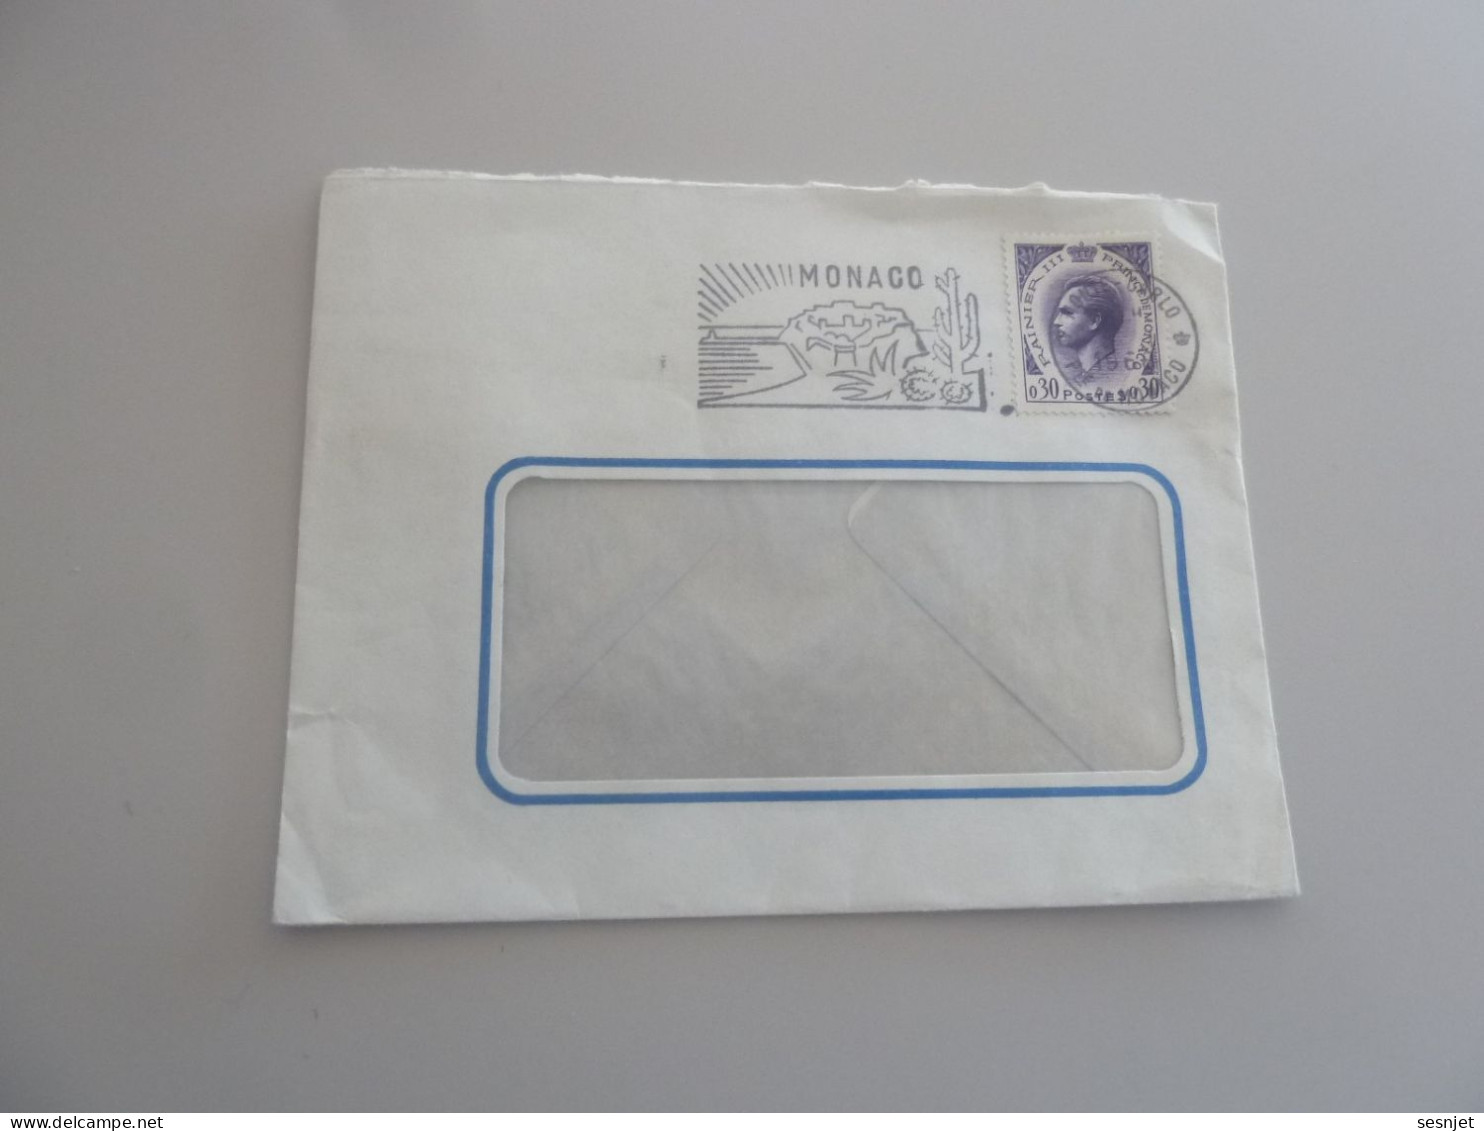 Commercia - Prince Rainier III - 30c. - Yt 545 - Violet - Enveloppe Avec Flamme Philatélique - Année 1960 - - Used Stamps